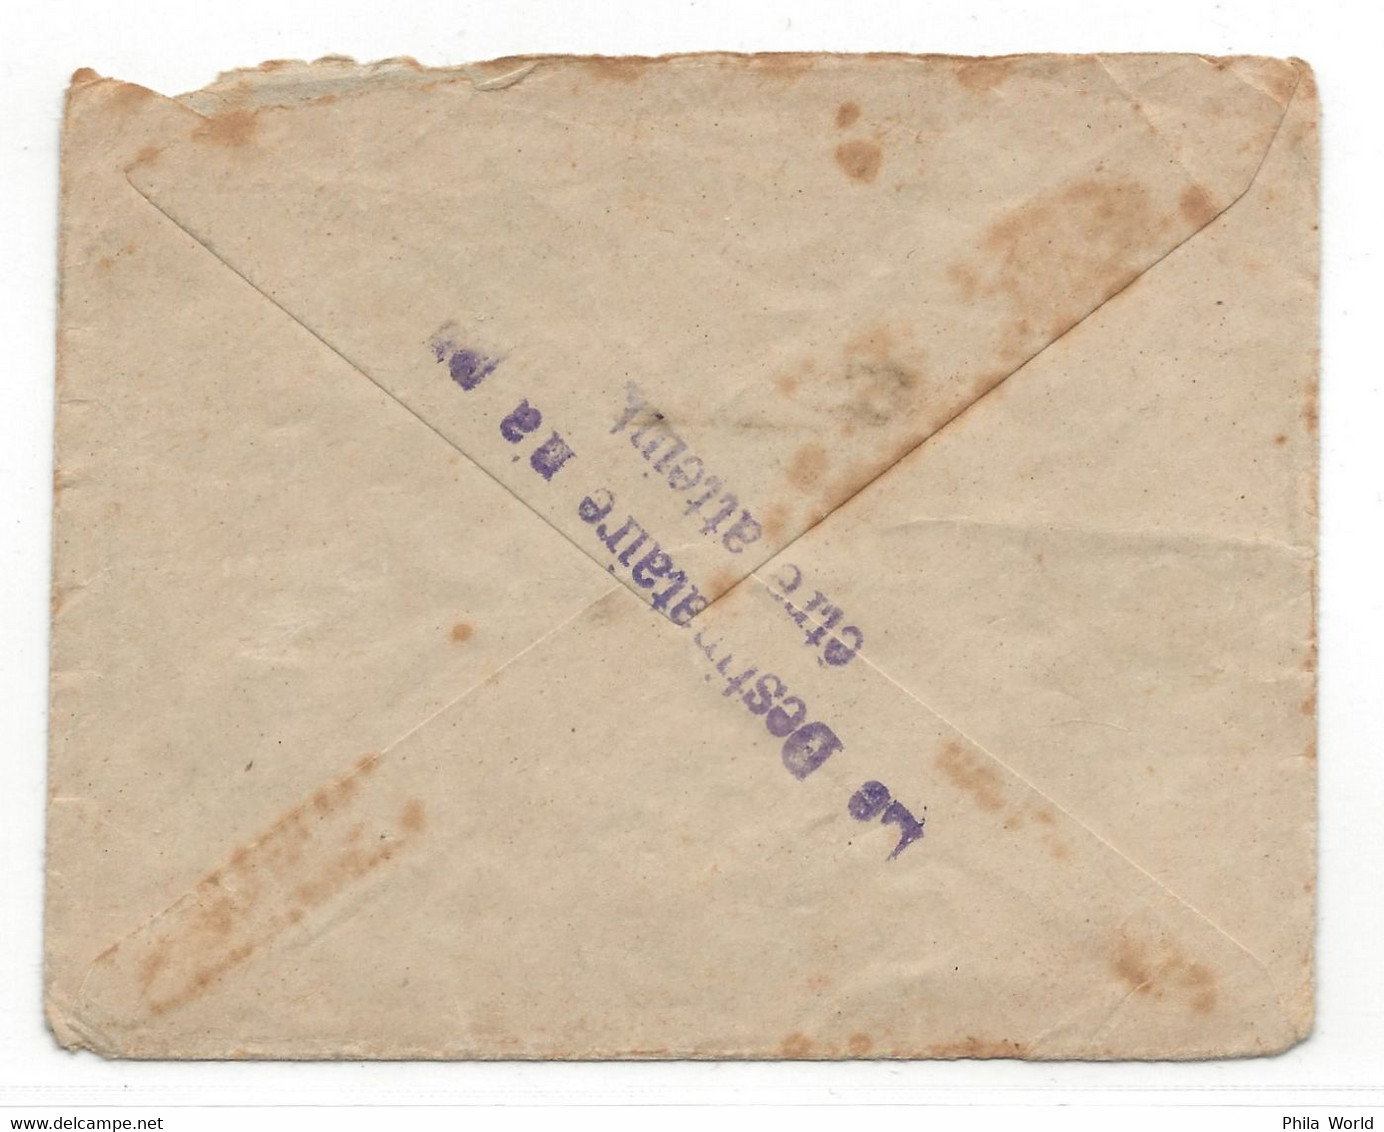 WW1 LAC Ou VILLERS - DOUBS - 1916 Lettre En Franchise Militaire Pour Secteur Postal 109 Destinataire N'a Pu être Atteint - 1. Weltkrieg 1914-1918